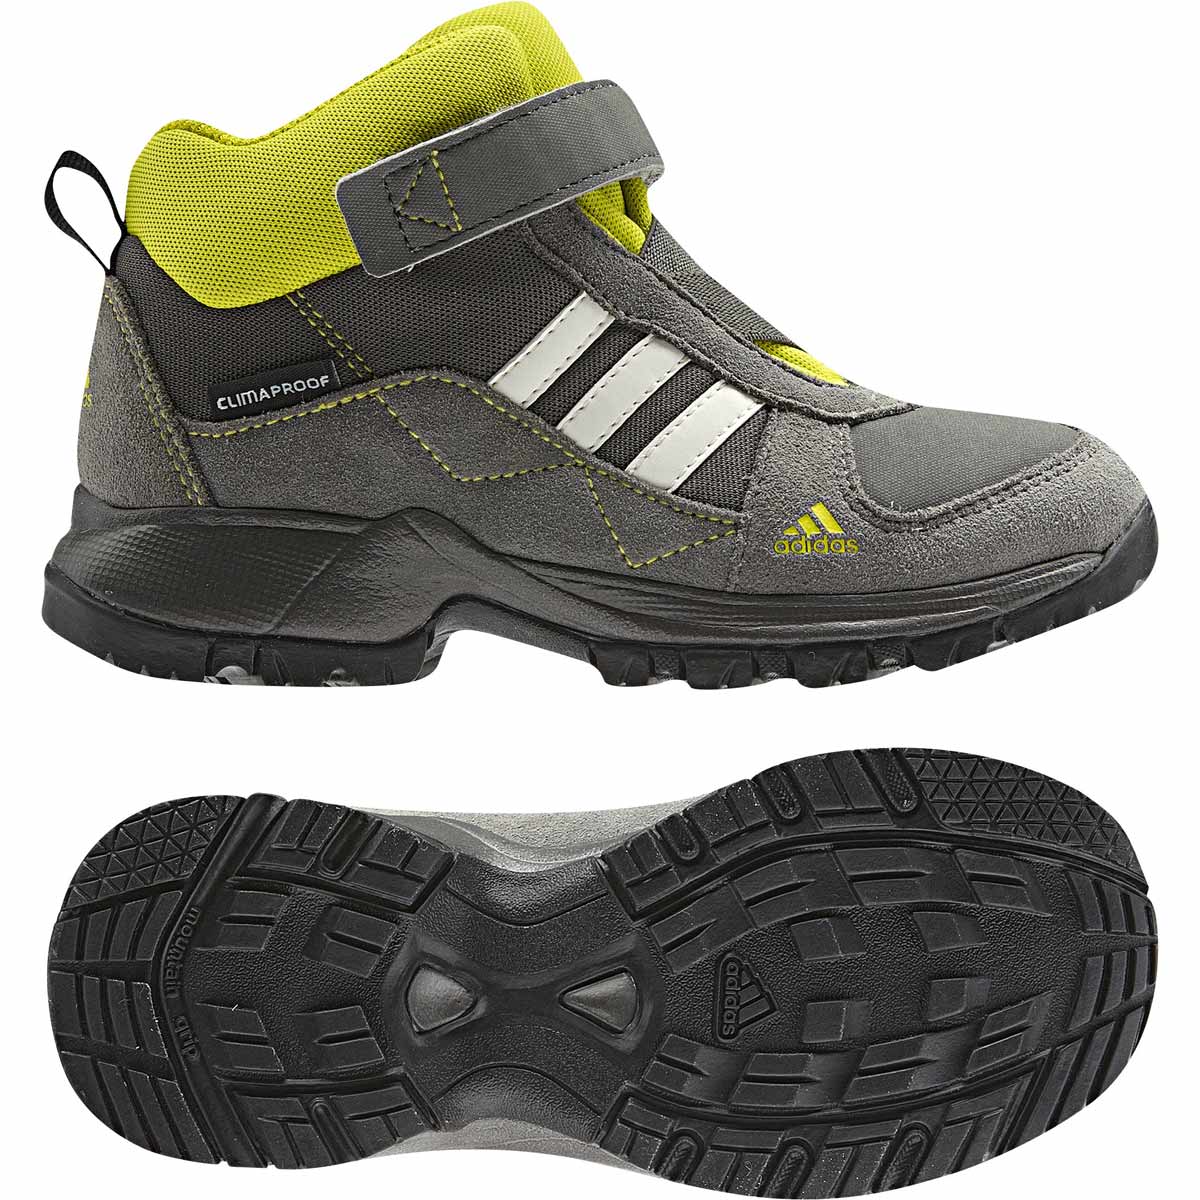 POWDERPLAY MID CF CP K - Detská outdoorová obuv